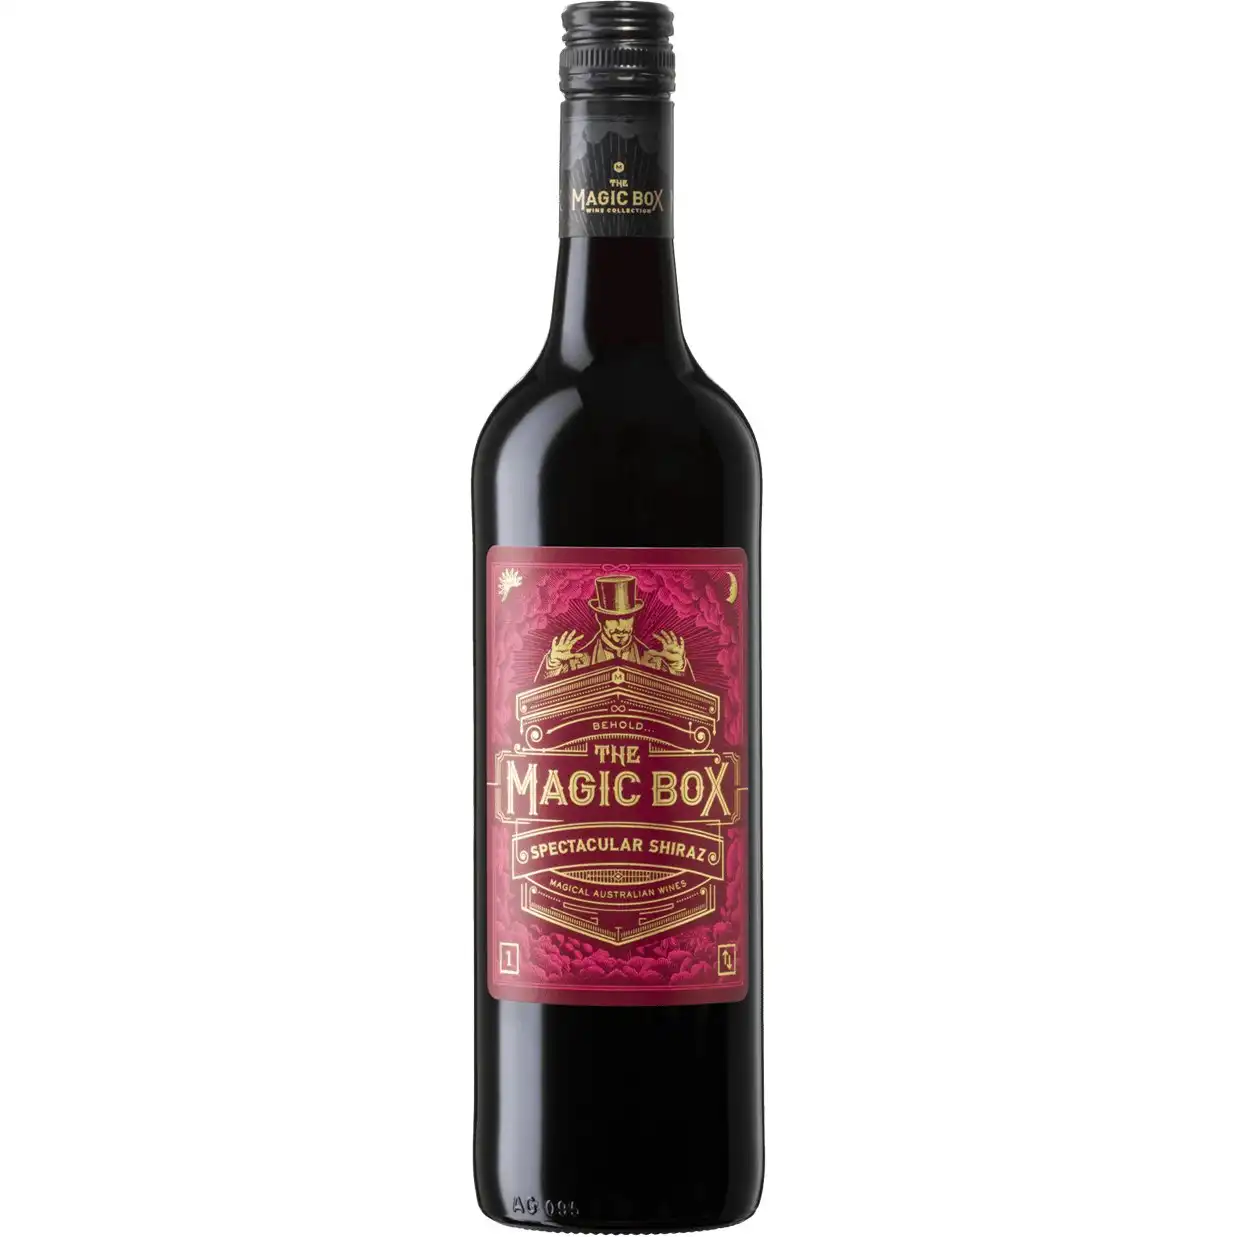 Magic Box Collection Spectacular Shiraz 2019 (12 bottles)